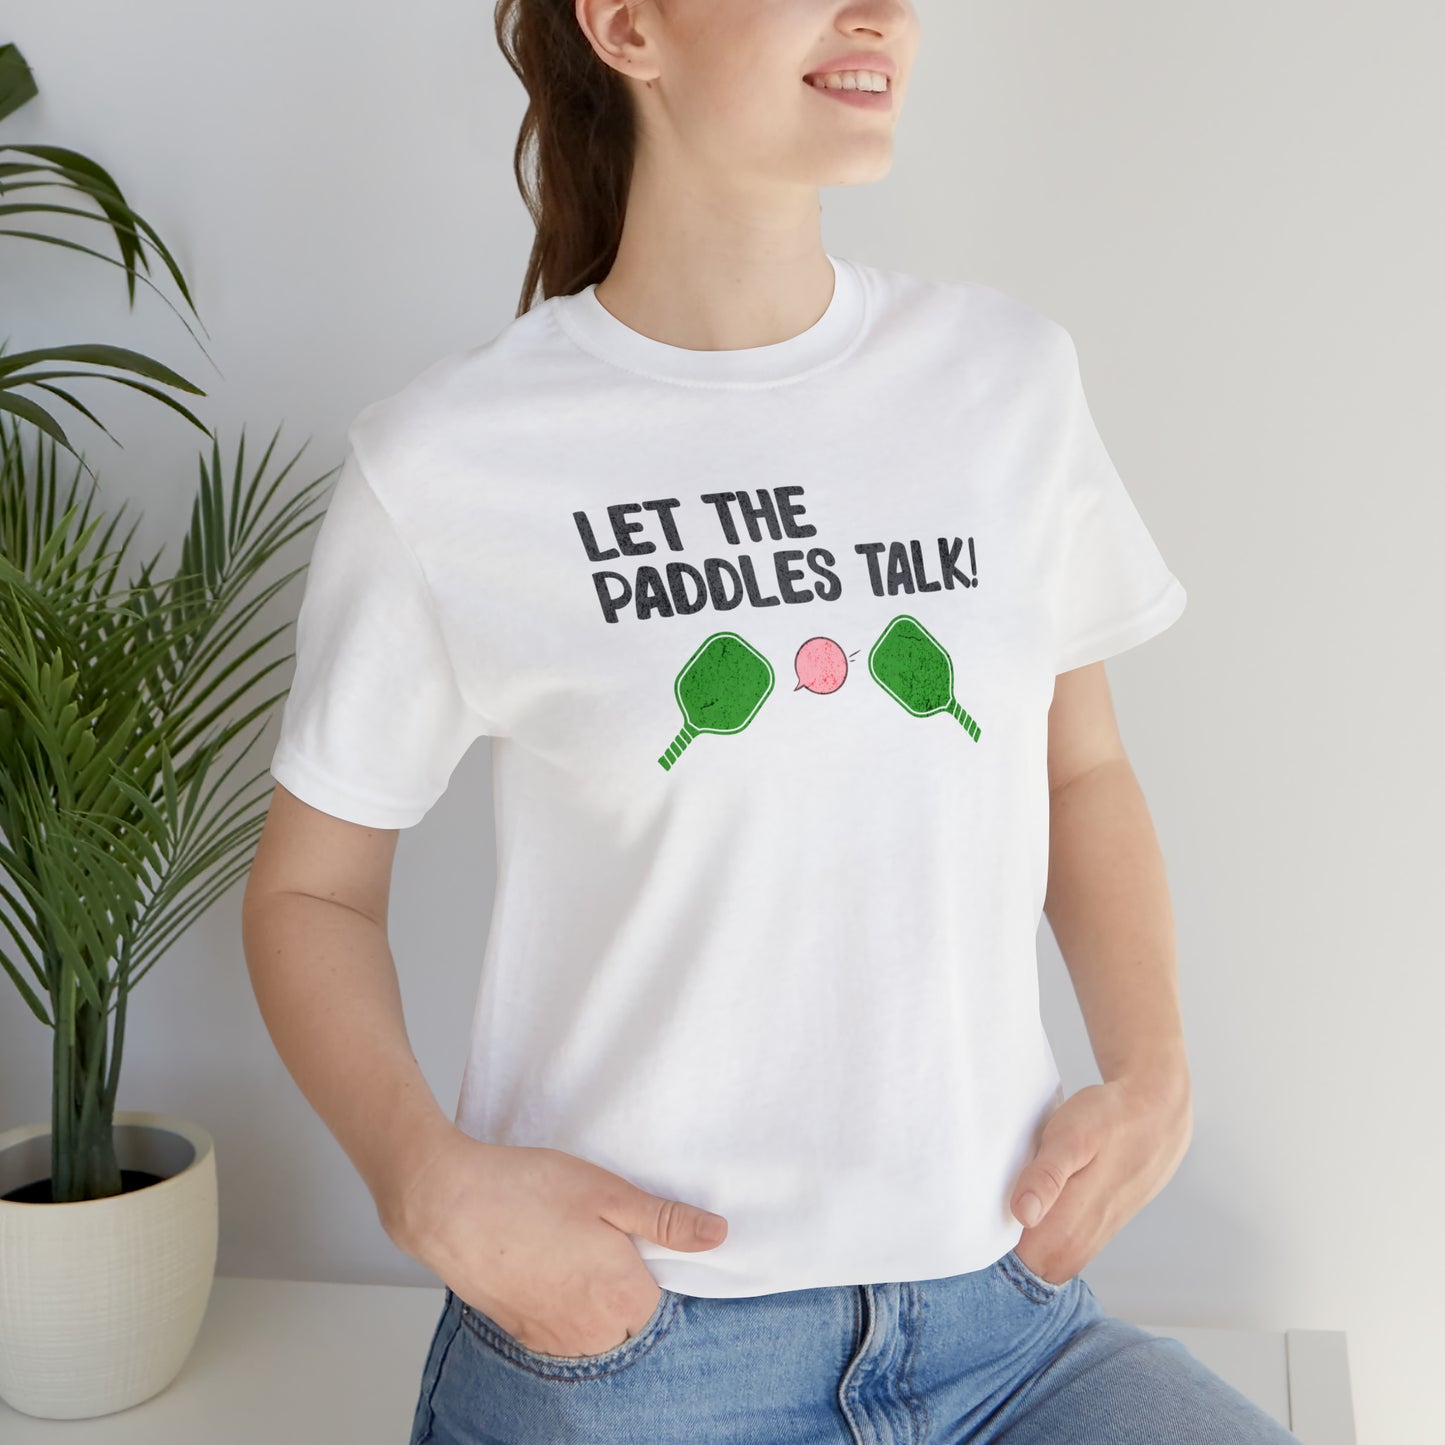 Let the Paddles Talk - Pickleball Noise T-Shirt